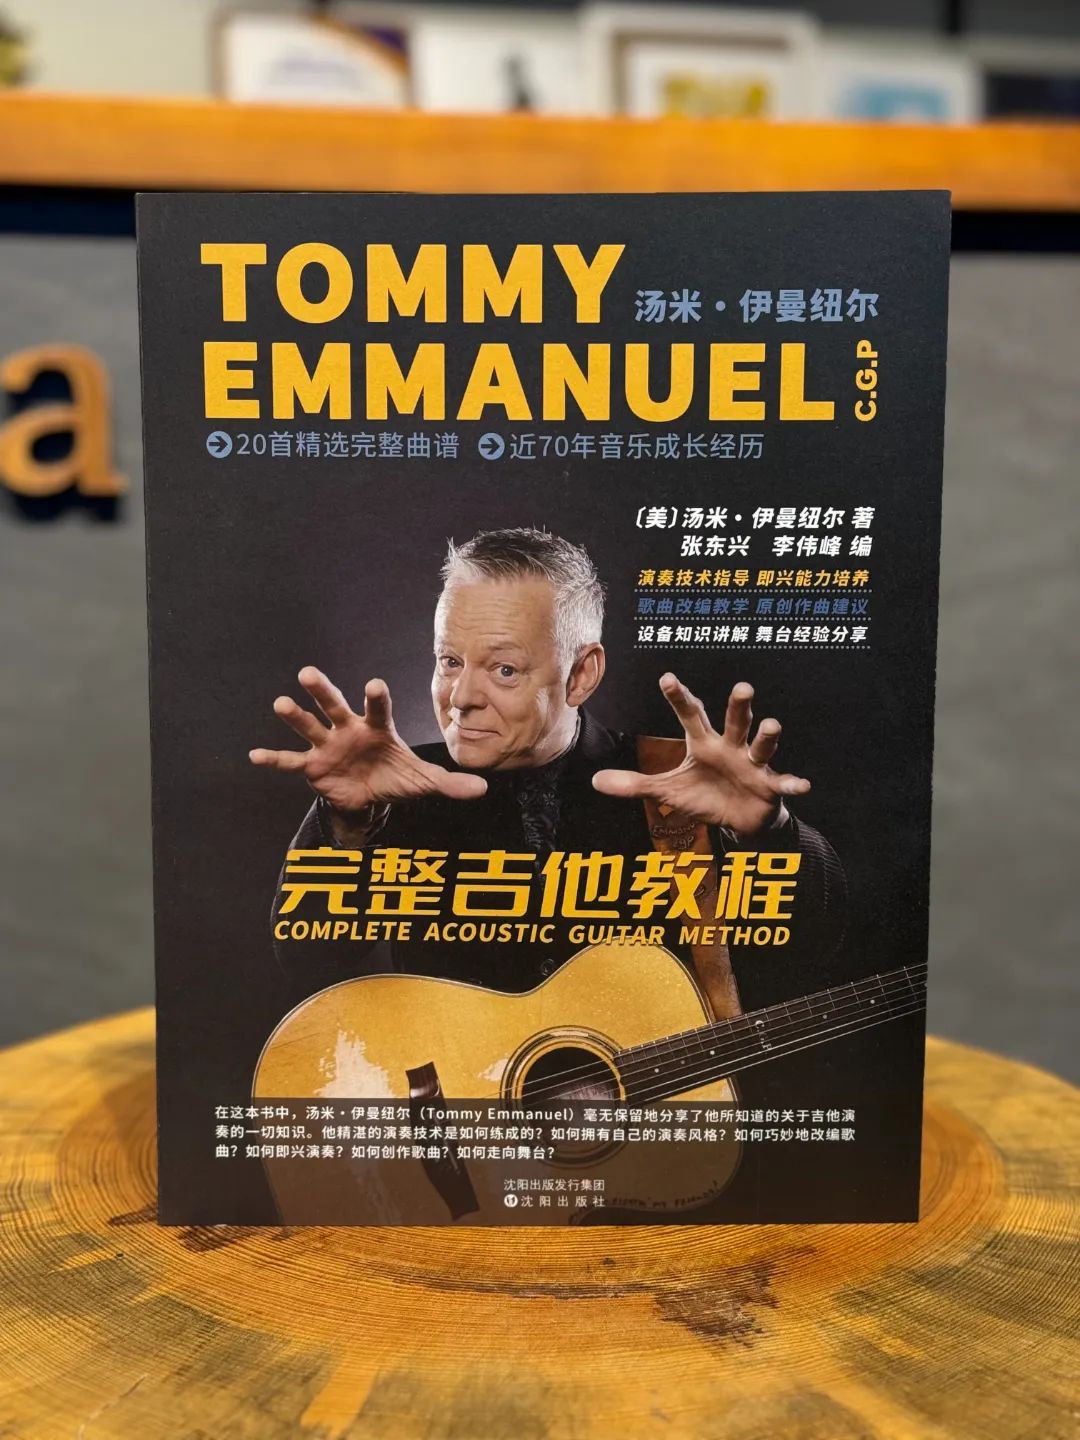 苦等730天“吉他之神”汤米 《完整吉他教程》发售！